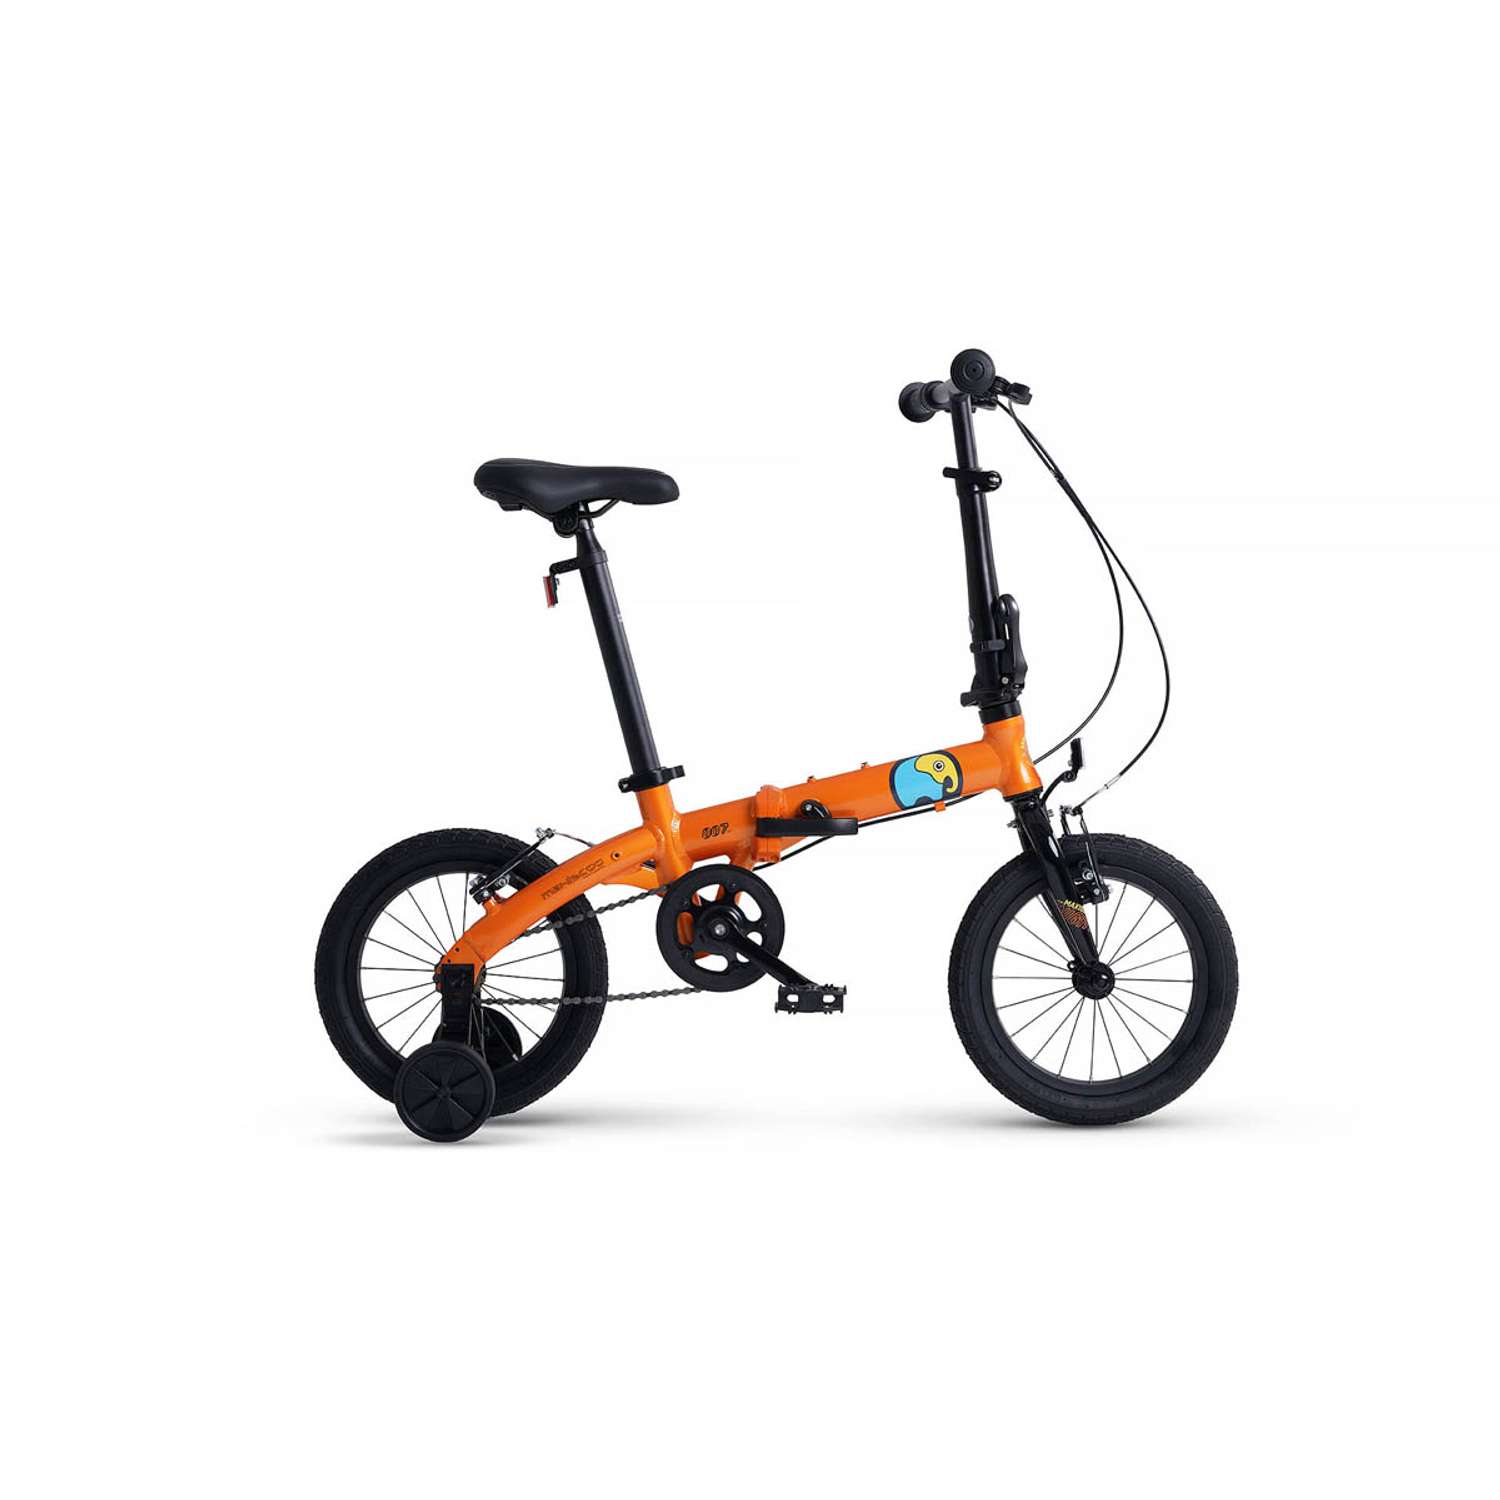 Велосипед Детский Складной Maxiscoo S007 стандарт 14 оранжевый - фото 1